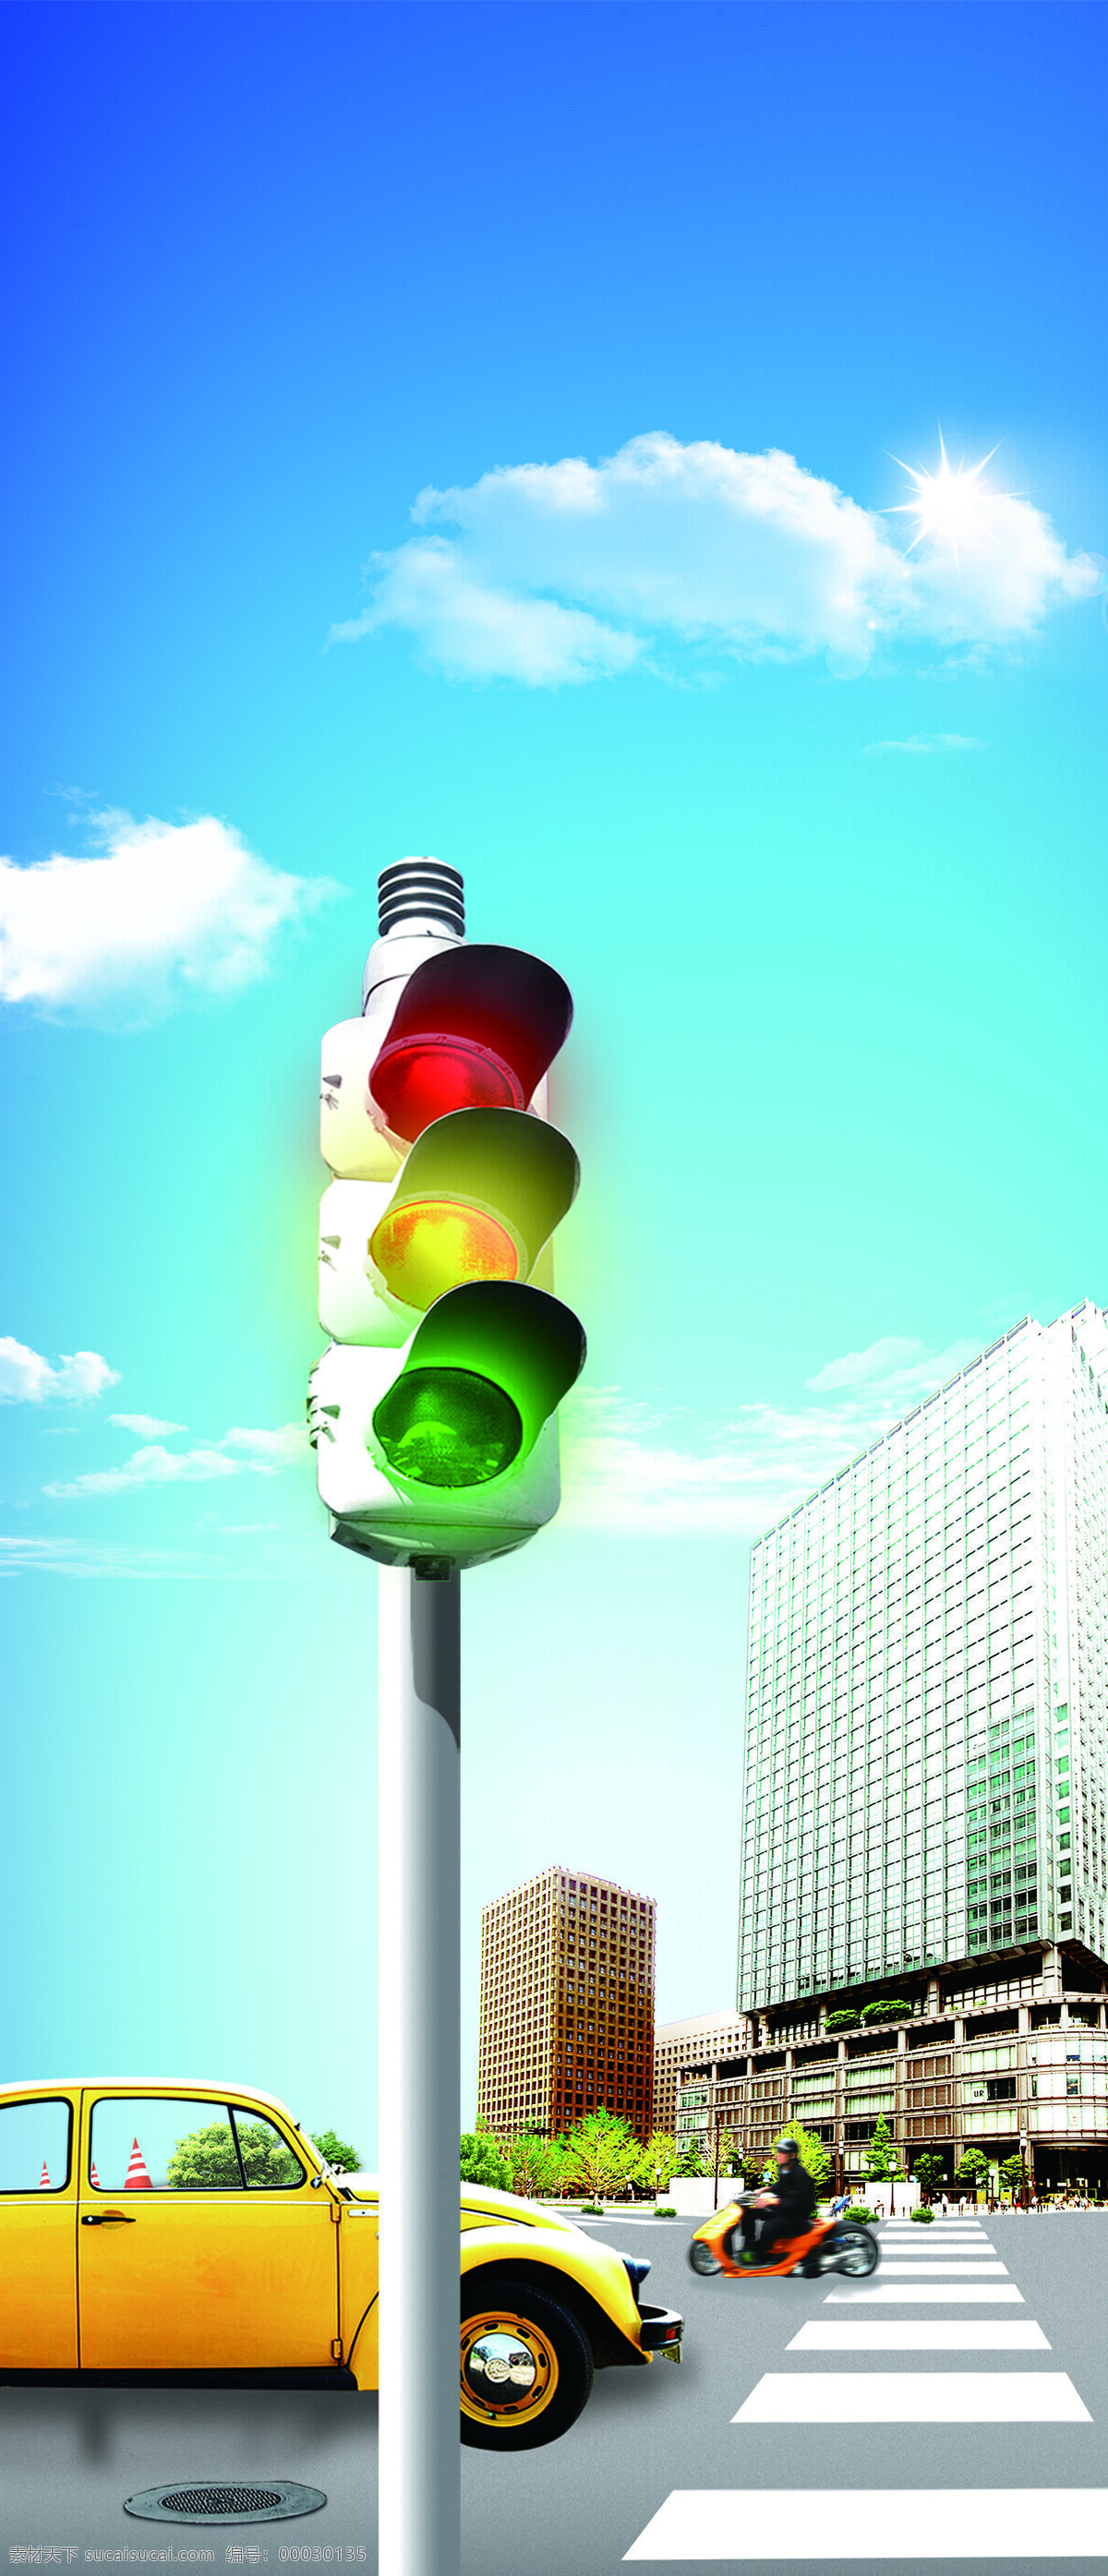 交通信号灯 背景 交通 底纹 信号灯 汽车 现代科技 交通工具